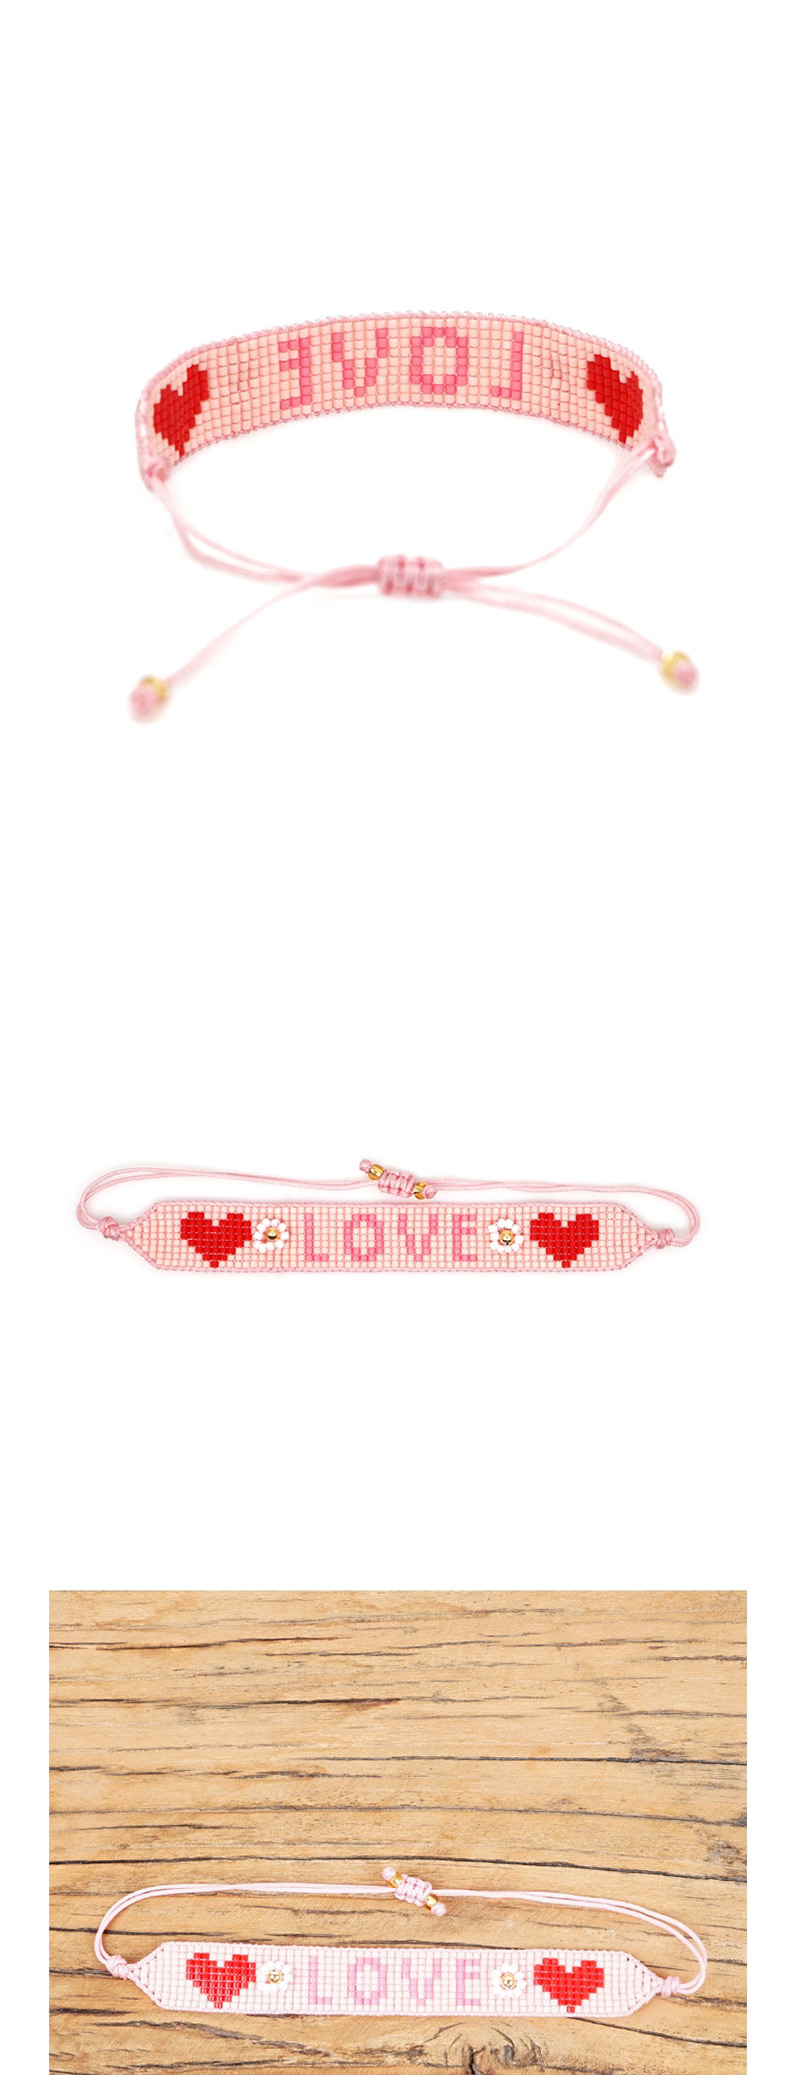  Pink Rice Beads Woven Letters Love Bracelet,Beaded Bracelet